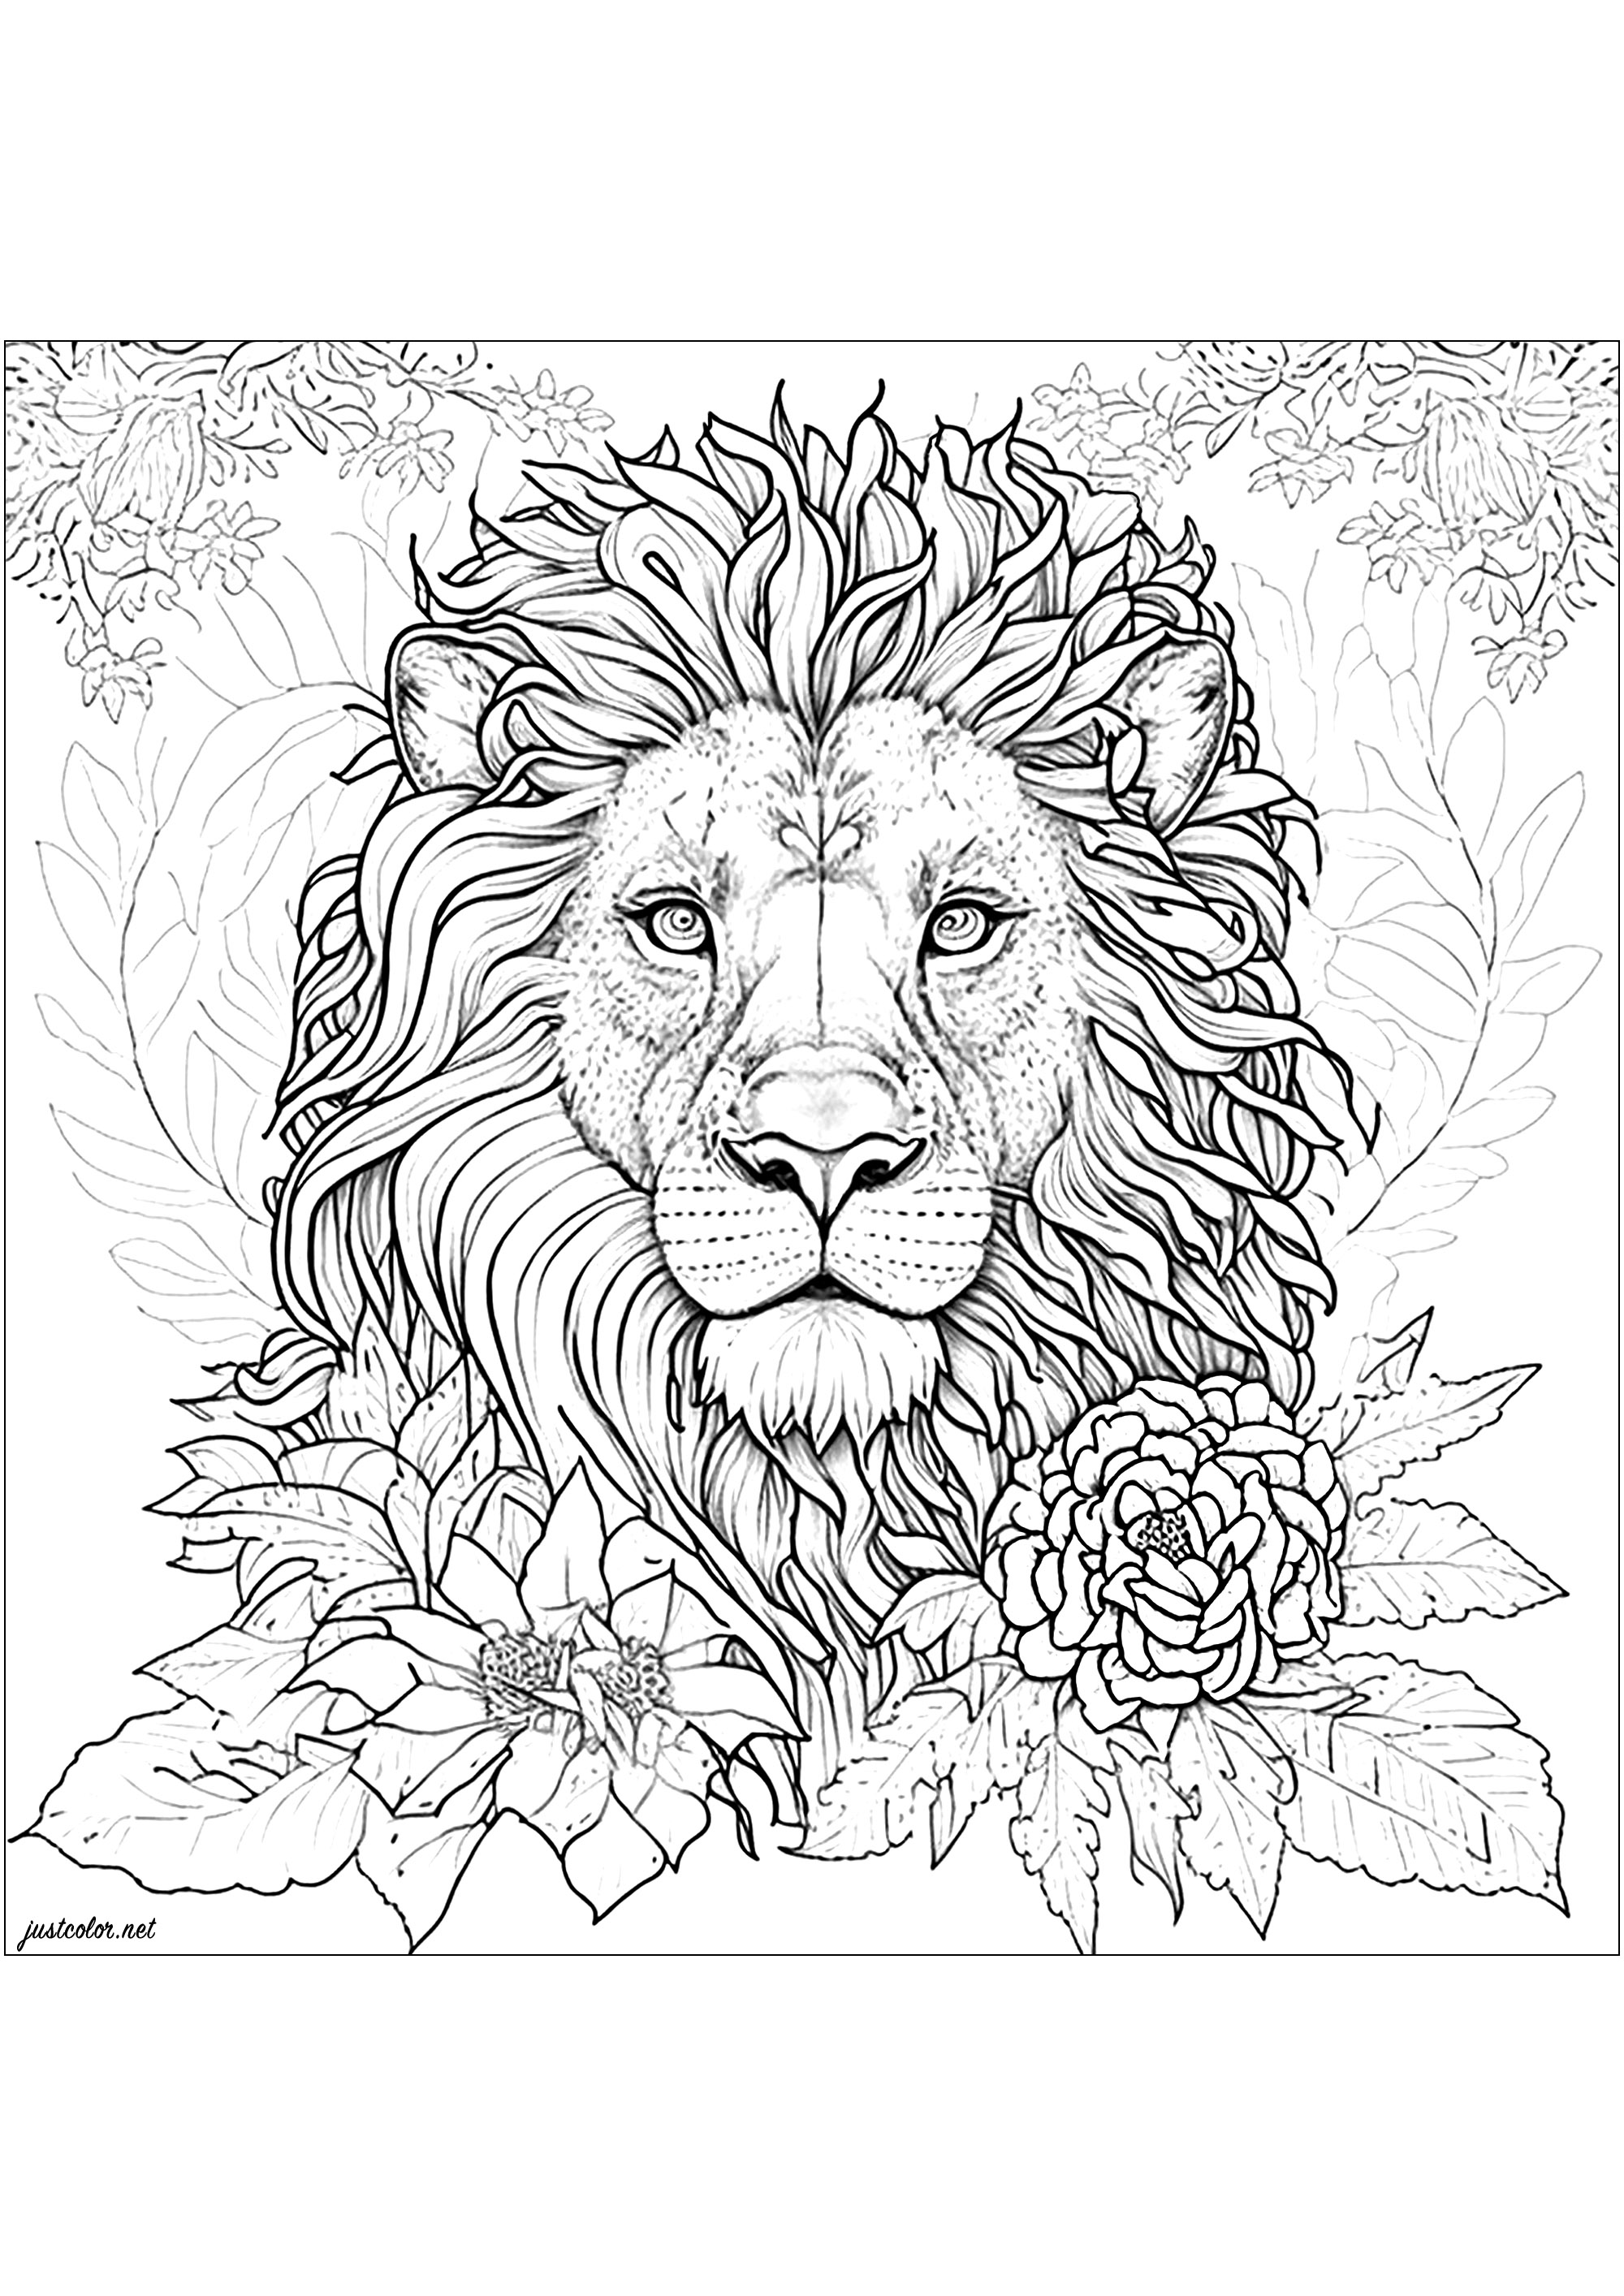 Colorazione di un leone circondato da bellissimi fiori. Questo disegno di leone è estremamente realistico e dettagliato! Prendetevi tutto il tempo necessario per colorare ogni parte della sua splendida criniera e tutta la vegetazione che lo circonda.